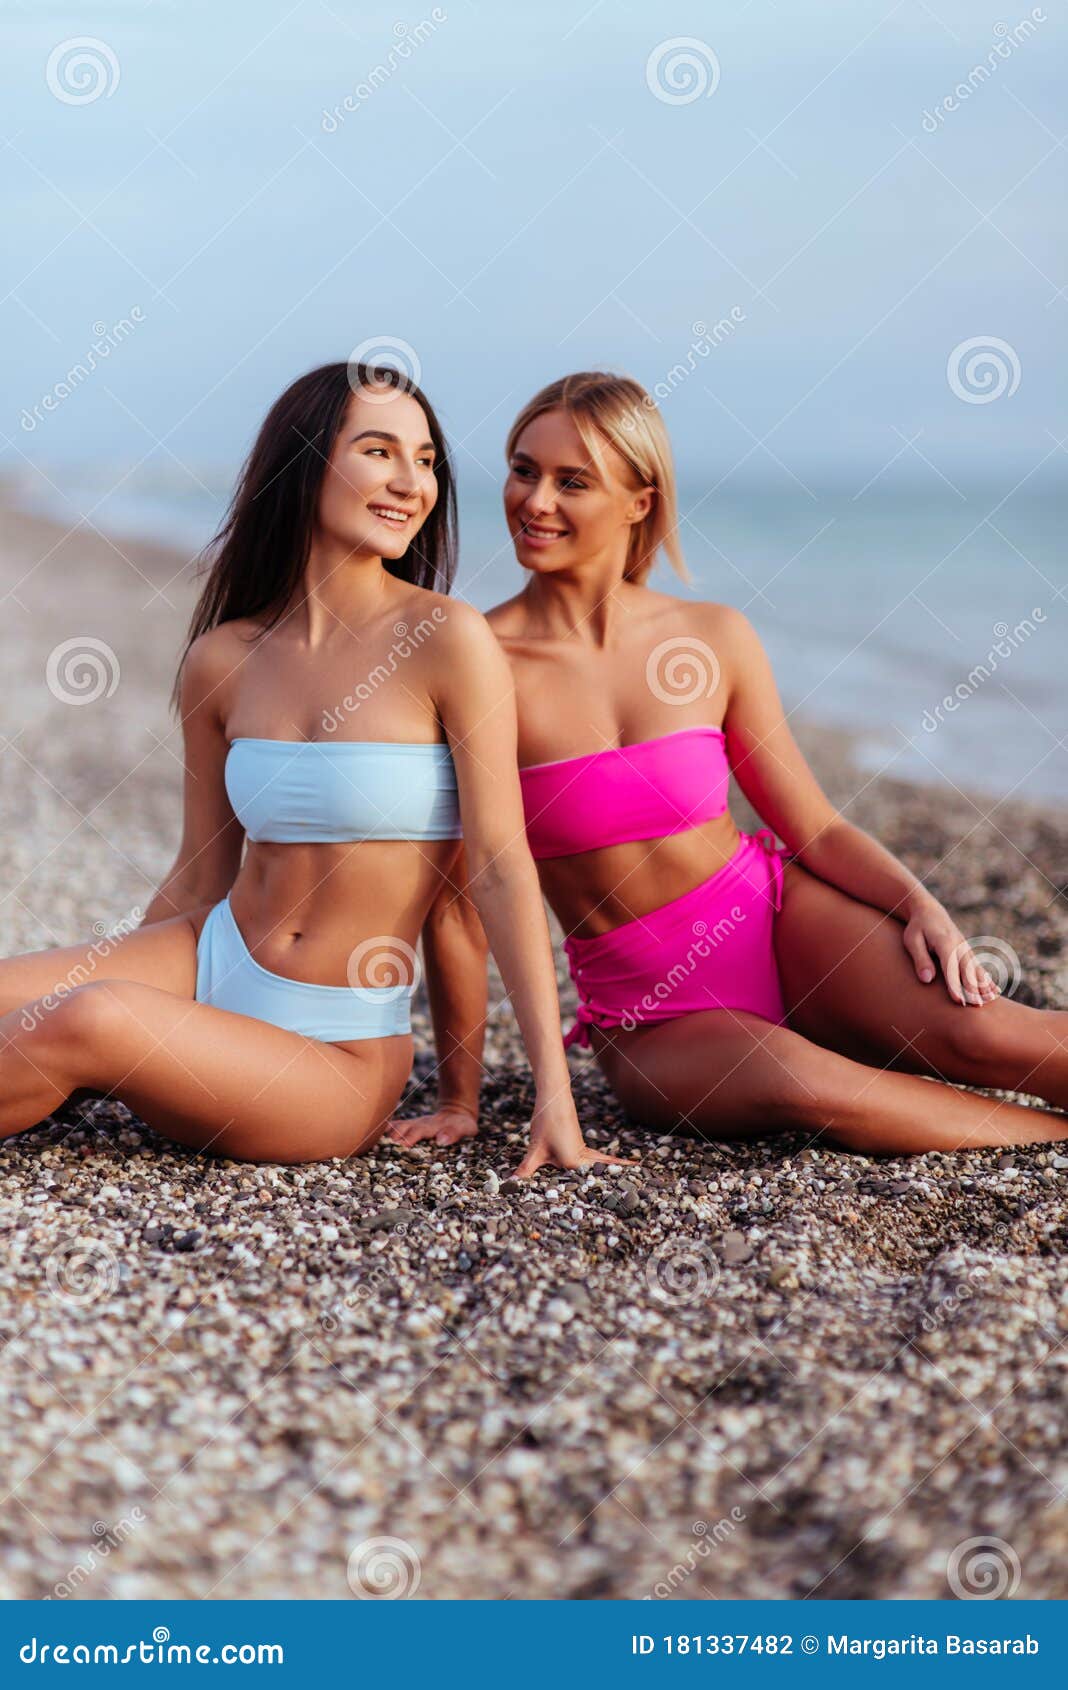 Блондинки и брюнетки на пляже фото фото